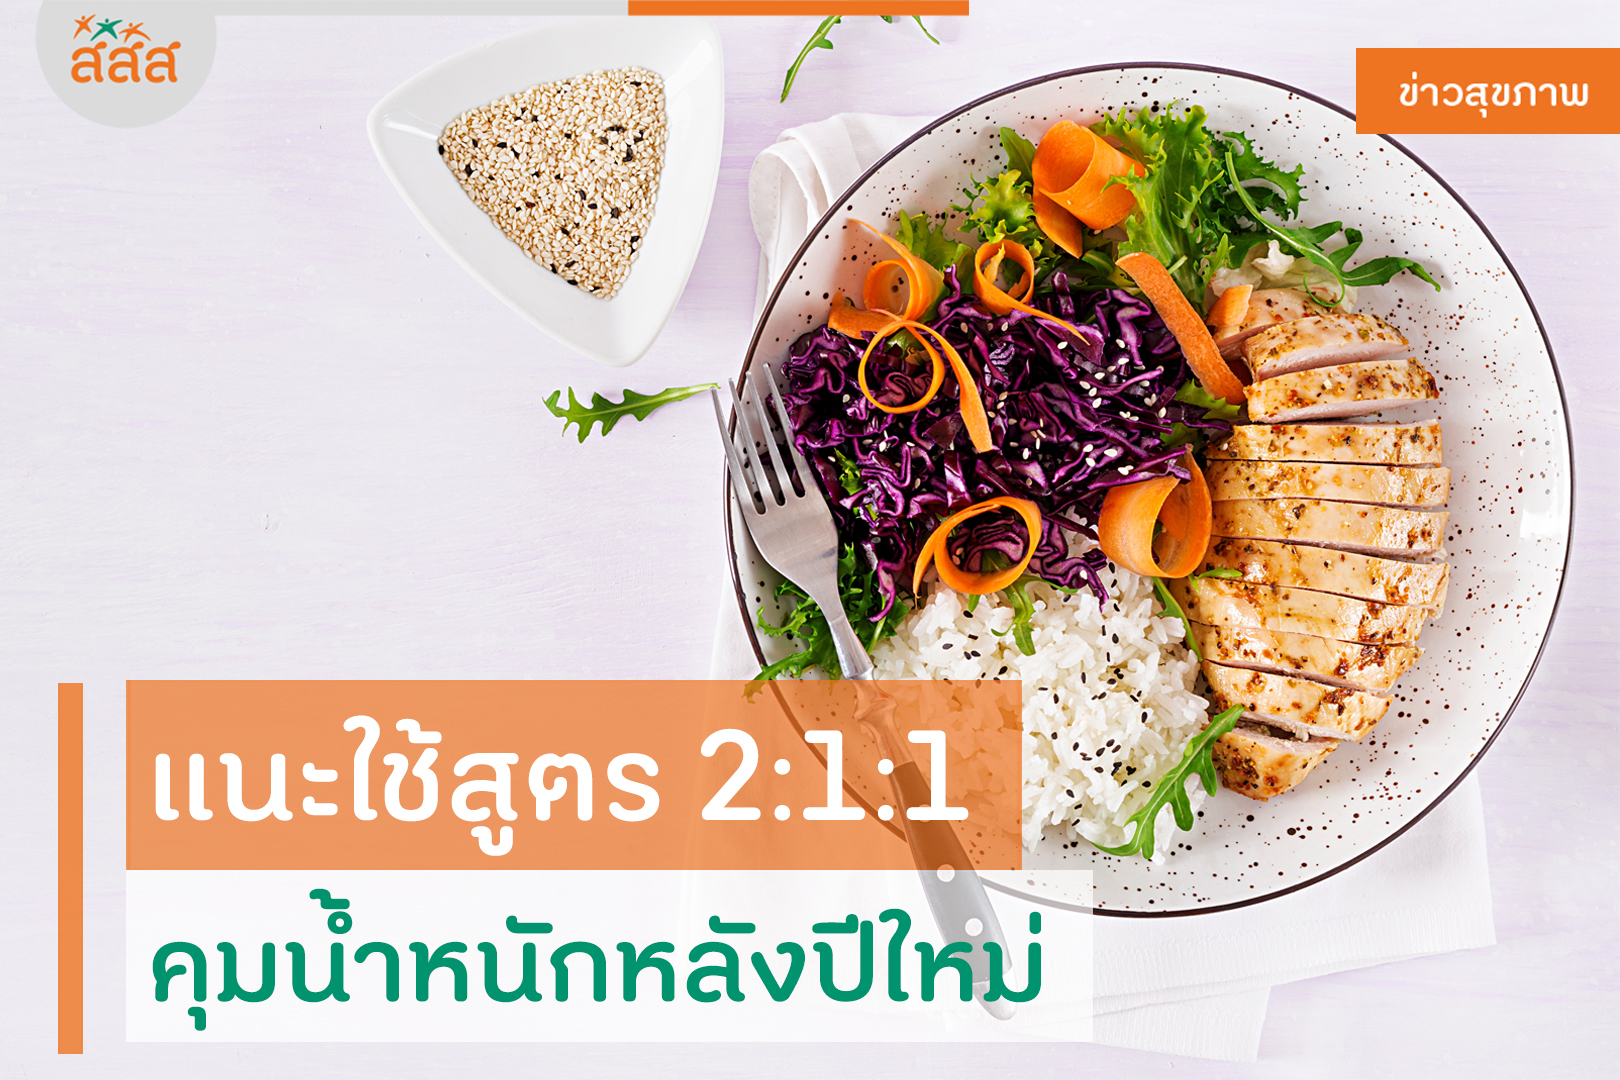 แนะใช้สูตร 2:1:1 คุมน้ำหนักหลังปีใหม่ thaihealth